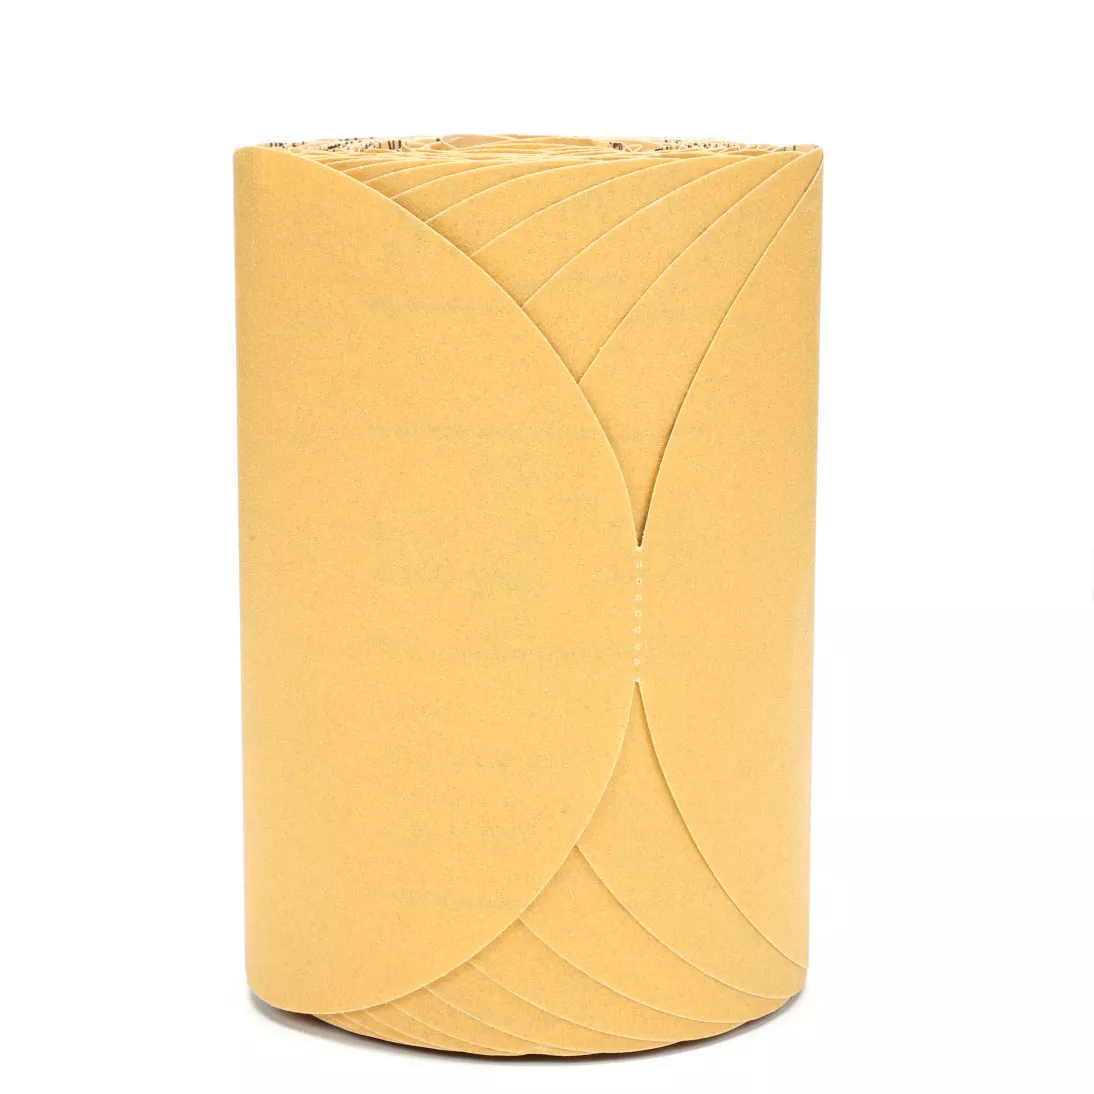 3M™ Stikit™ Gold Paper Disc Roll, 49918, 6 in, P180 grade, 175 discs per
roll, 6 rolls per case